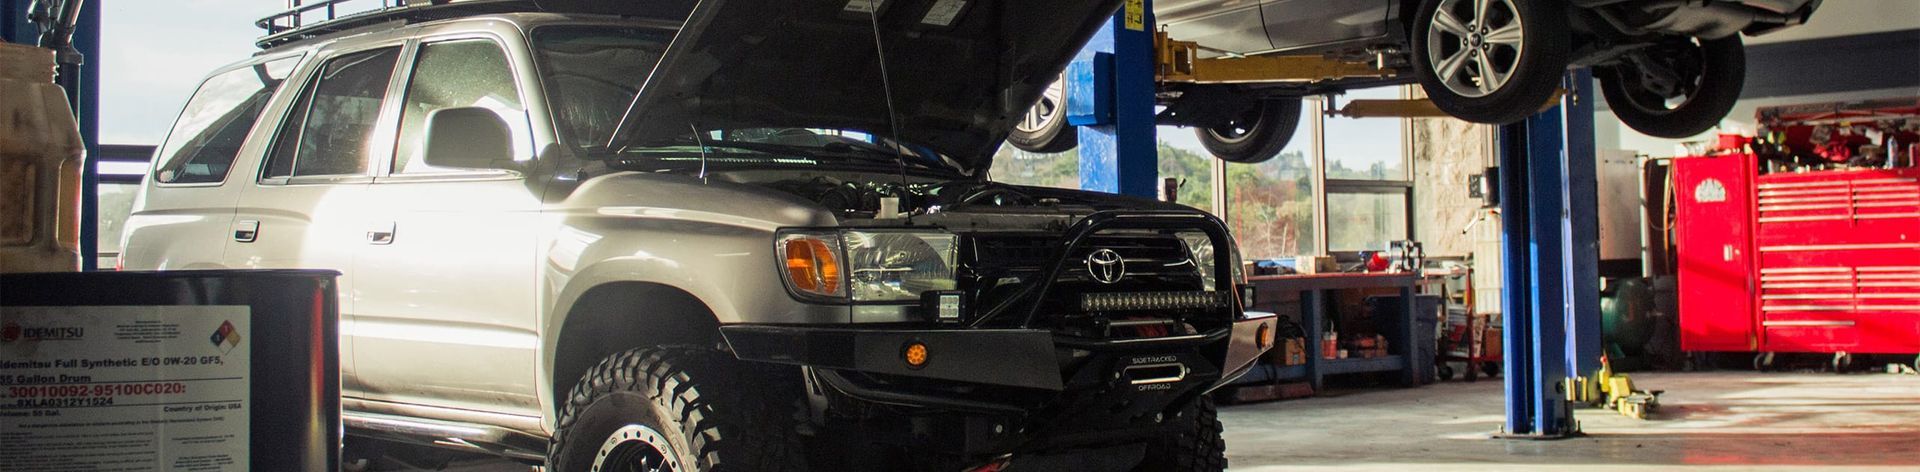 Toyota Repair & Service in Walnut Creek, CA - Top Shop Auto